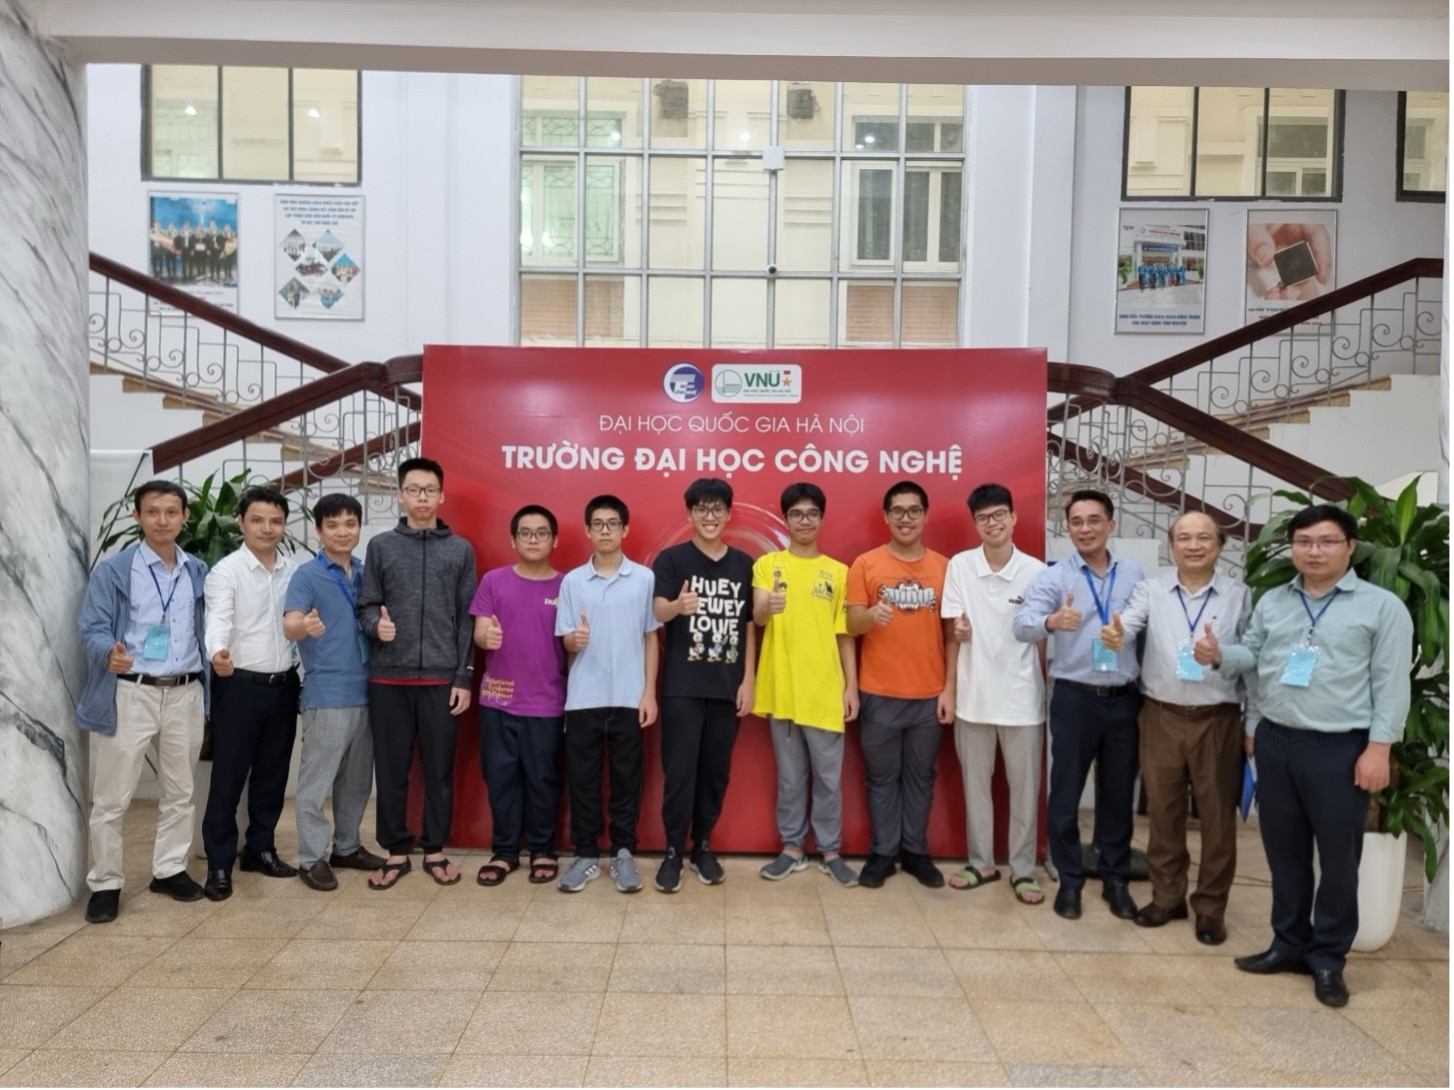 7 thí sinh đoạt giải Olympic Tin học châu Á và các thầy trong ban tổ chức tại Trường đại học Công nghệ - Đại học Quốc gia Hà Nội - Ảnh: Bộ GD-ĐT